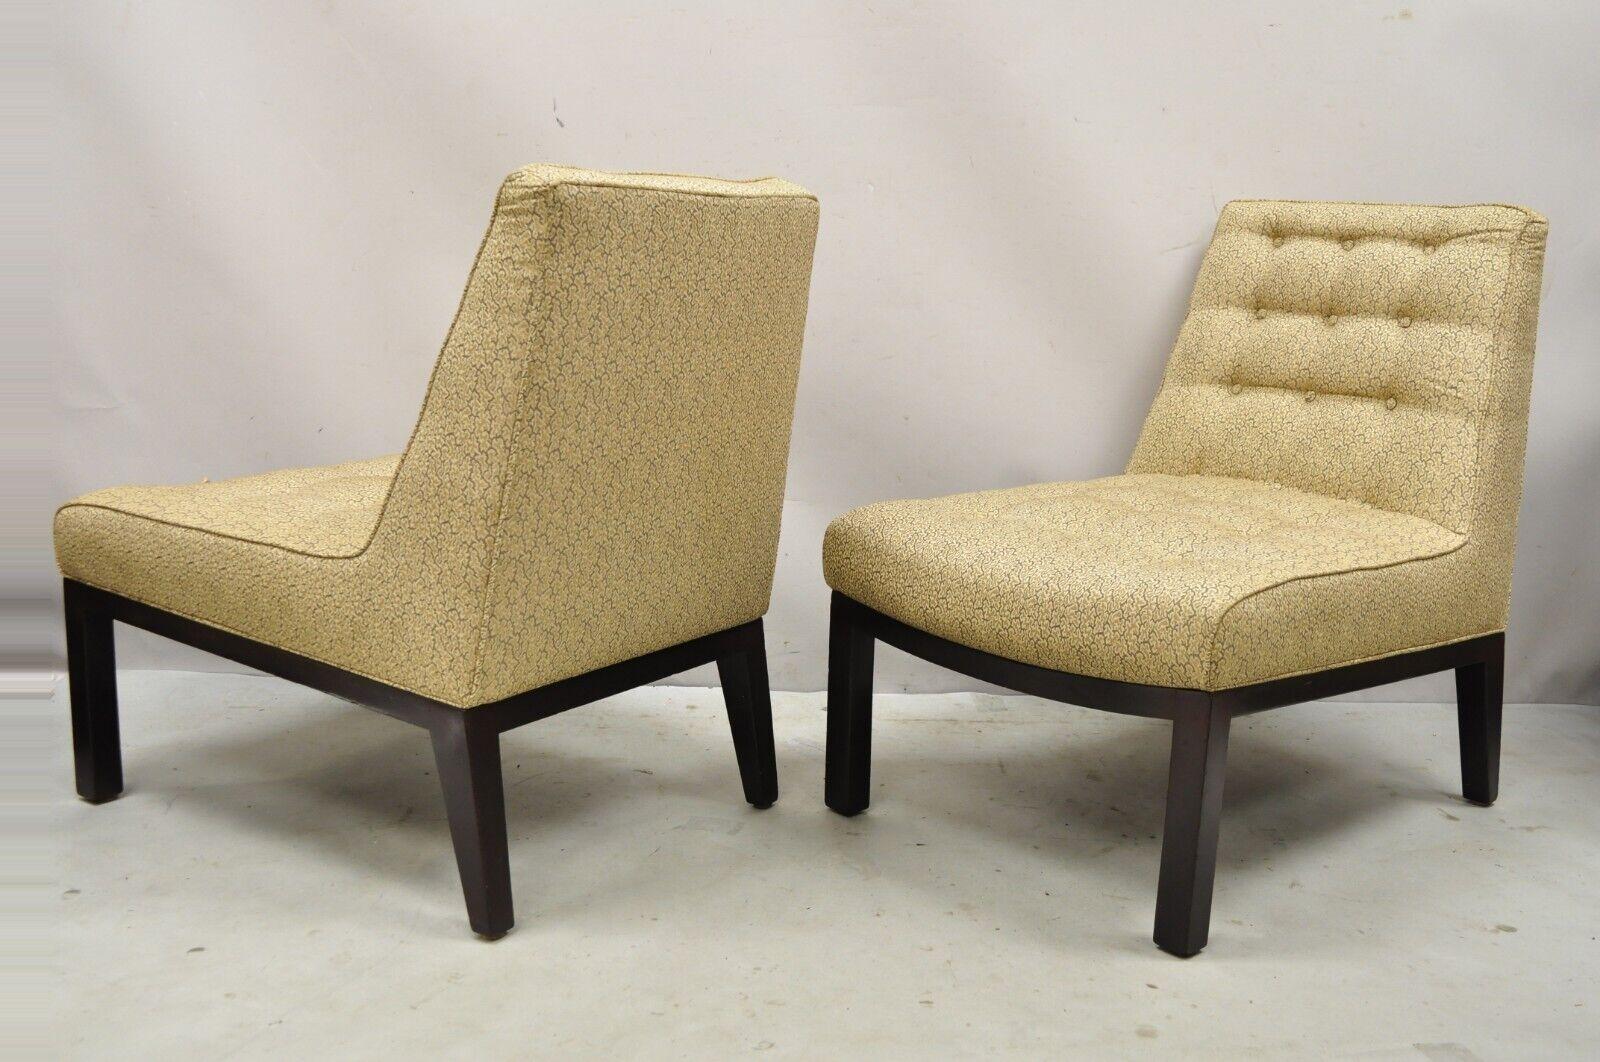 Edward Wormley für Dunbar Holzrahmen Slipper Lounge Chairs - ein Paar. Der Artikel zeichnet sich durch schöne tiefe Rahmen, Massivholzsockel, konische und abgewinkelte Rückenlehnen aus. Original Label, sehr schönes Vintage-Paar, klare modernistische